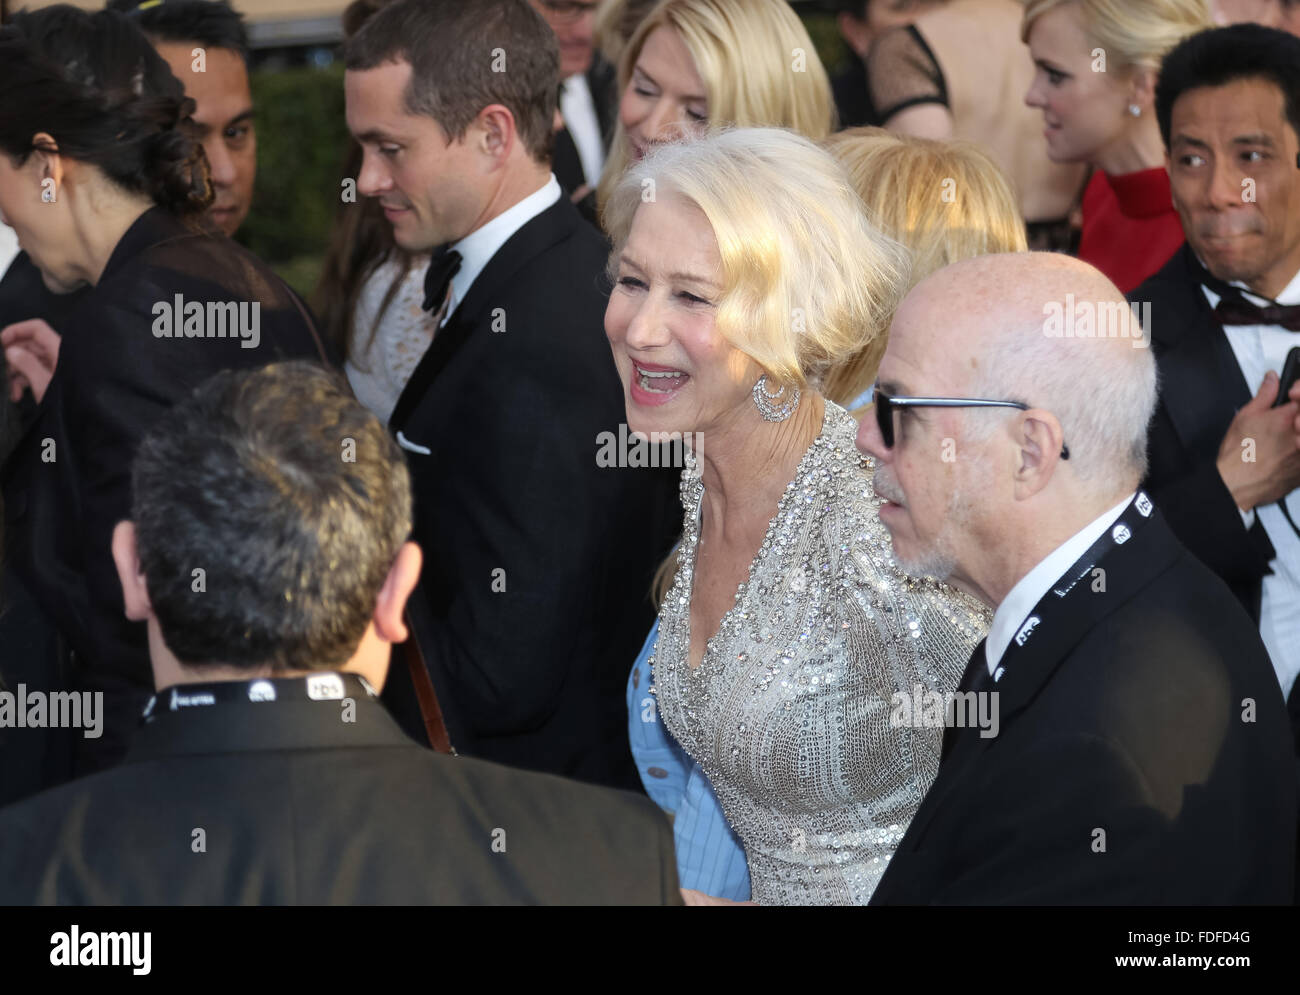 L'actrice Helen Mirren assiste à la 22e assemblée annuelle des Screen Actors Guild Awards, SAG Awards, Au Shrine Auditorium à Los Angeles, USA, le 30 janvier 2016. Photo : Hubert Boesl /dpa - PAS DE FIL - SERVICE Banque D'Images